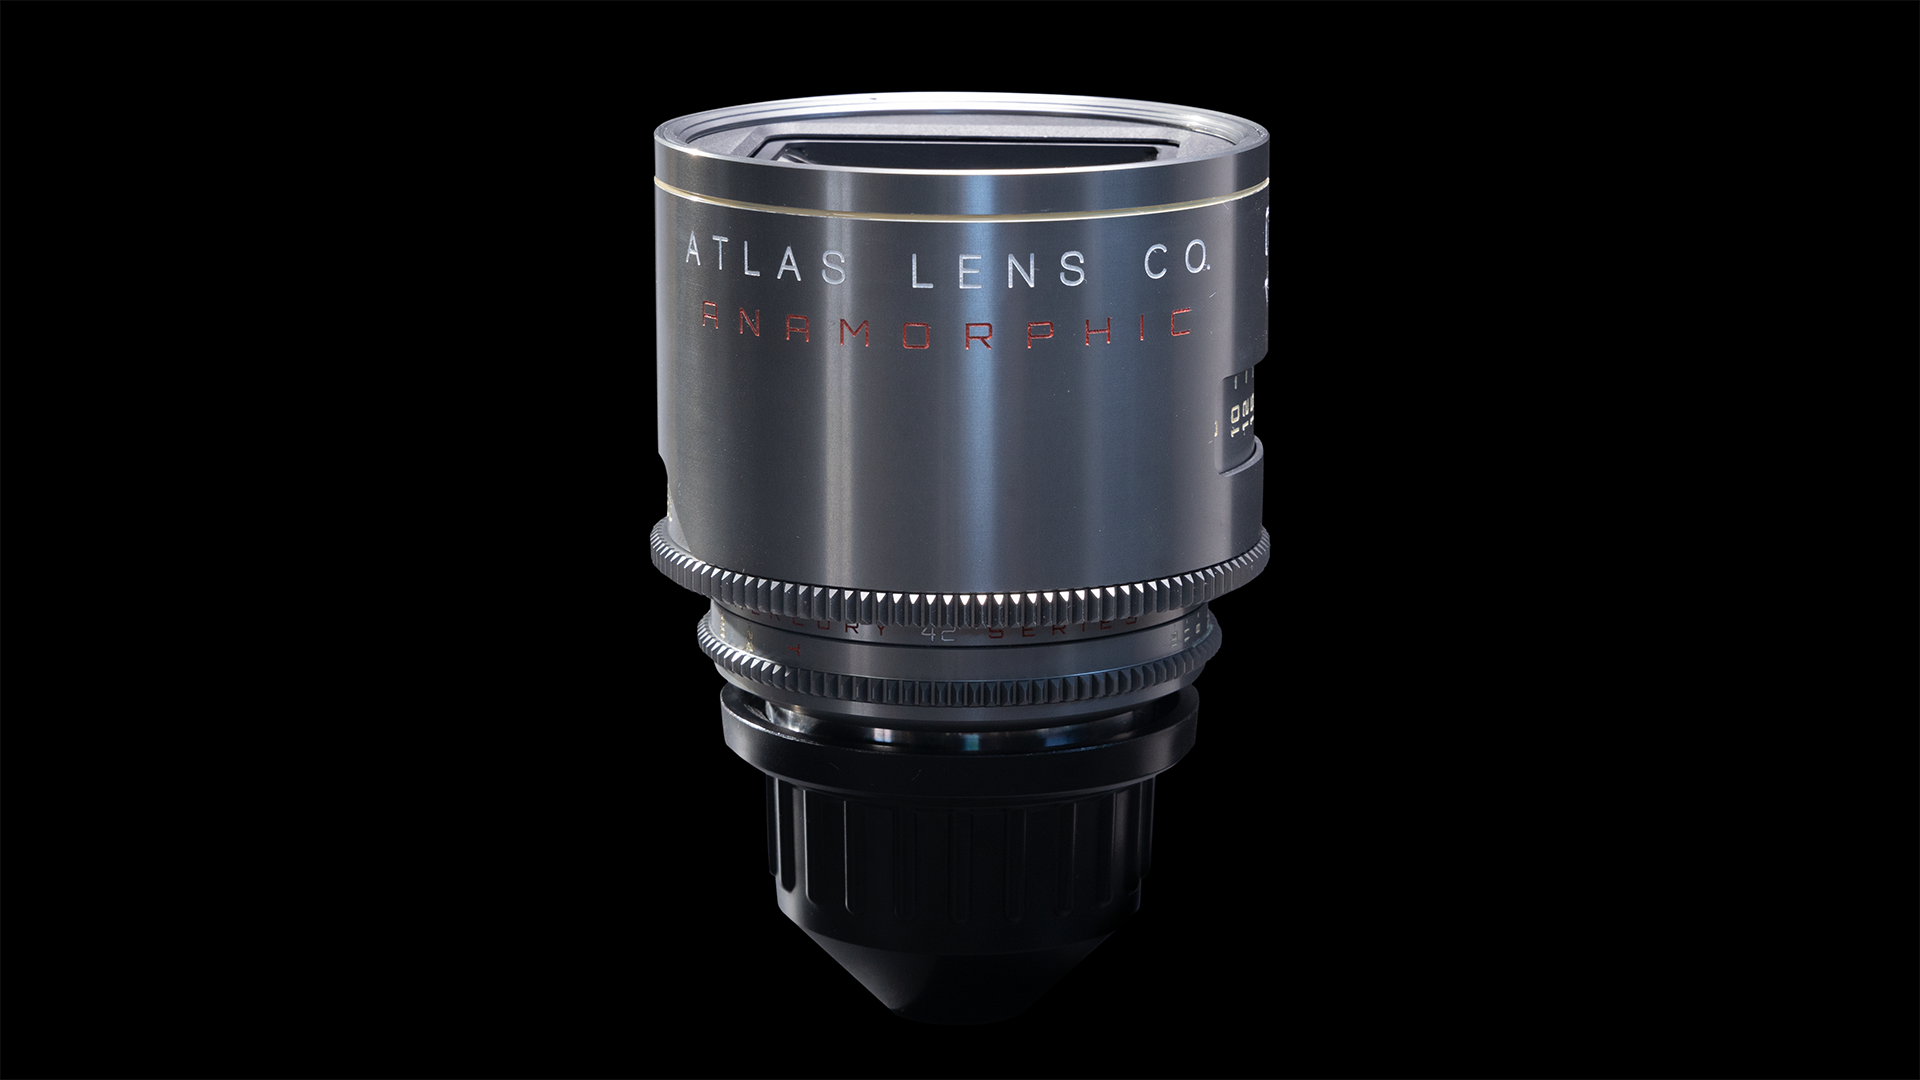 Altas Lens Co. Mercury Series